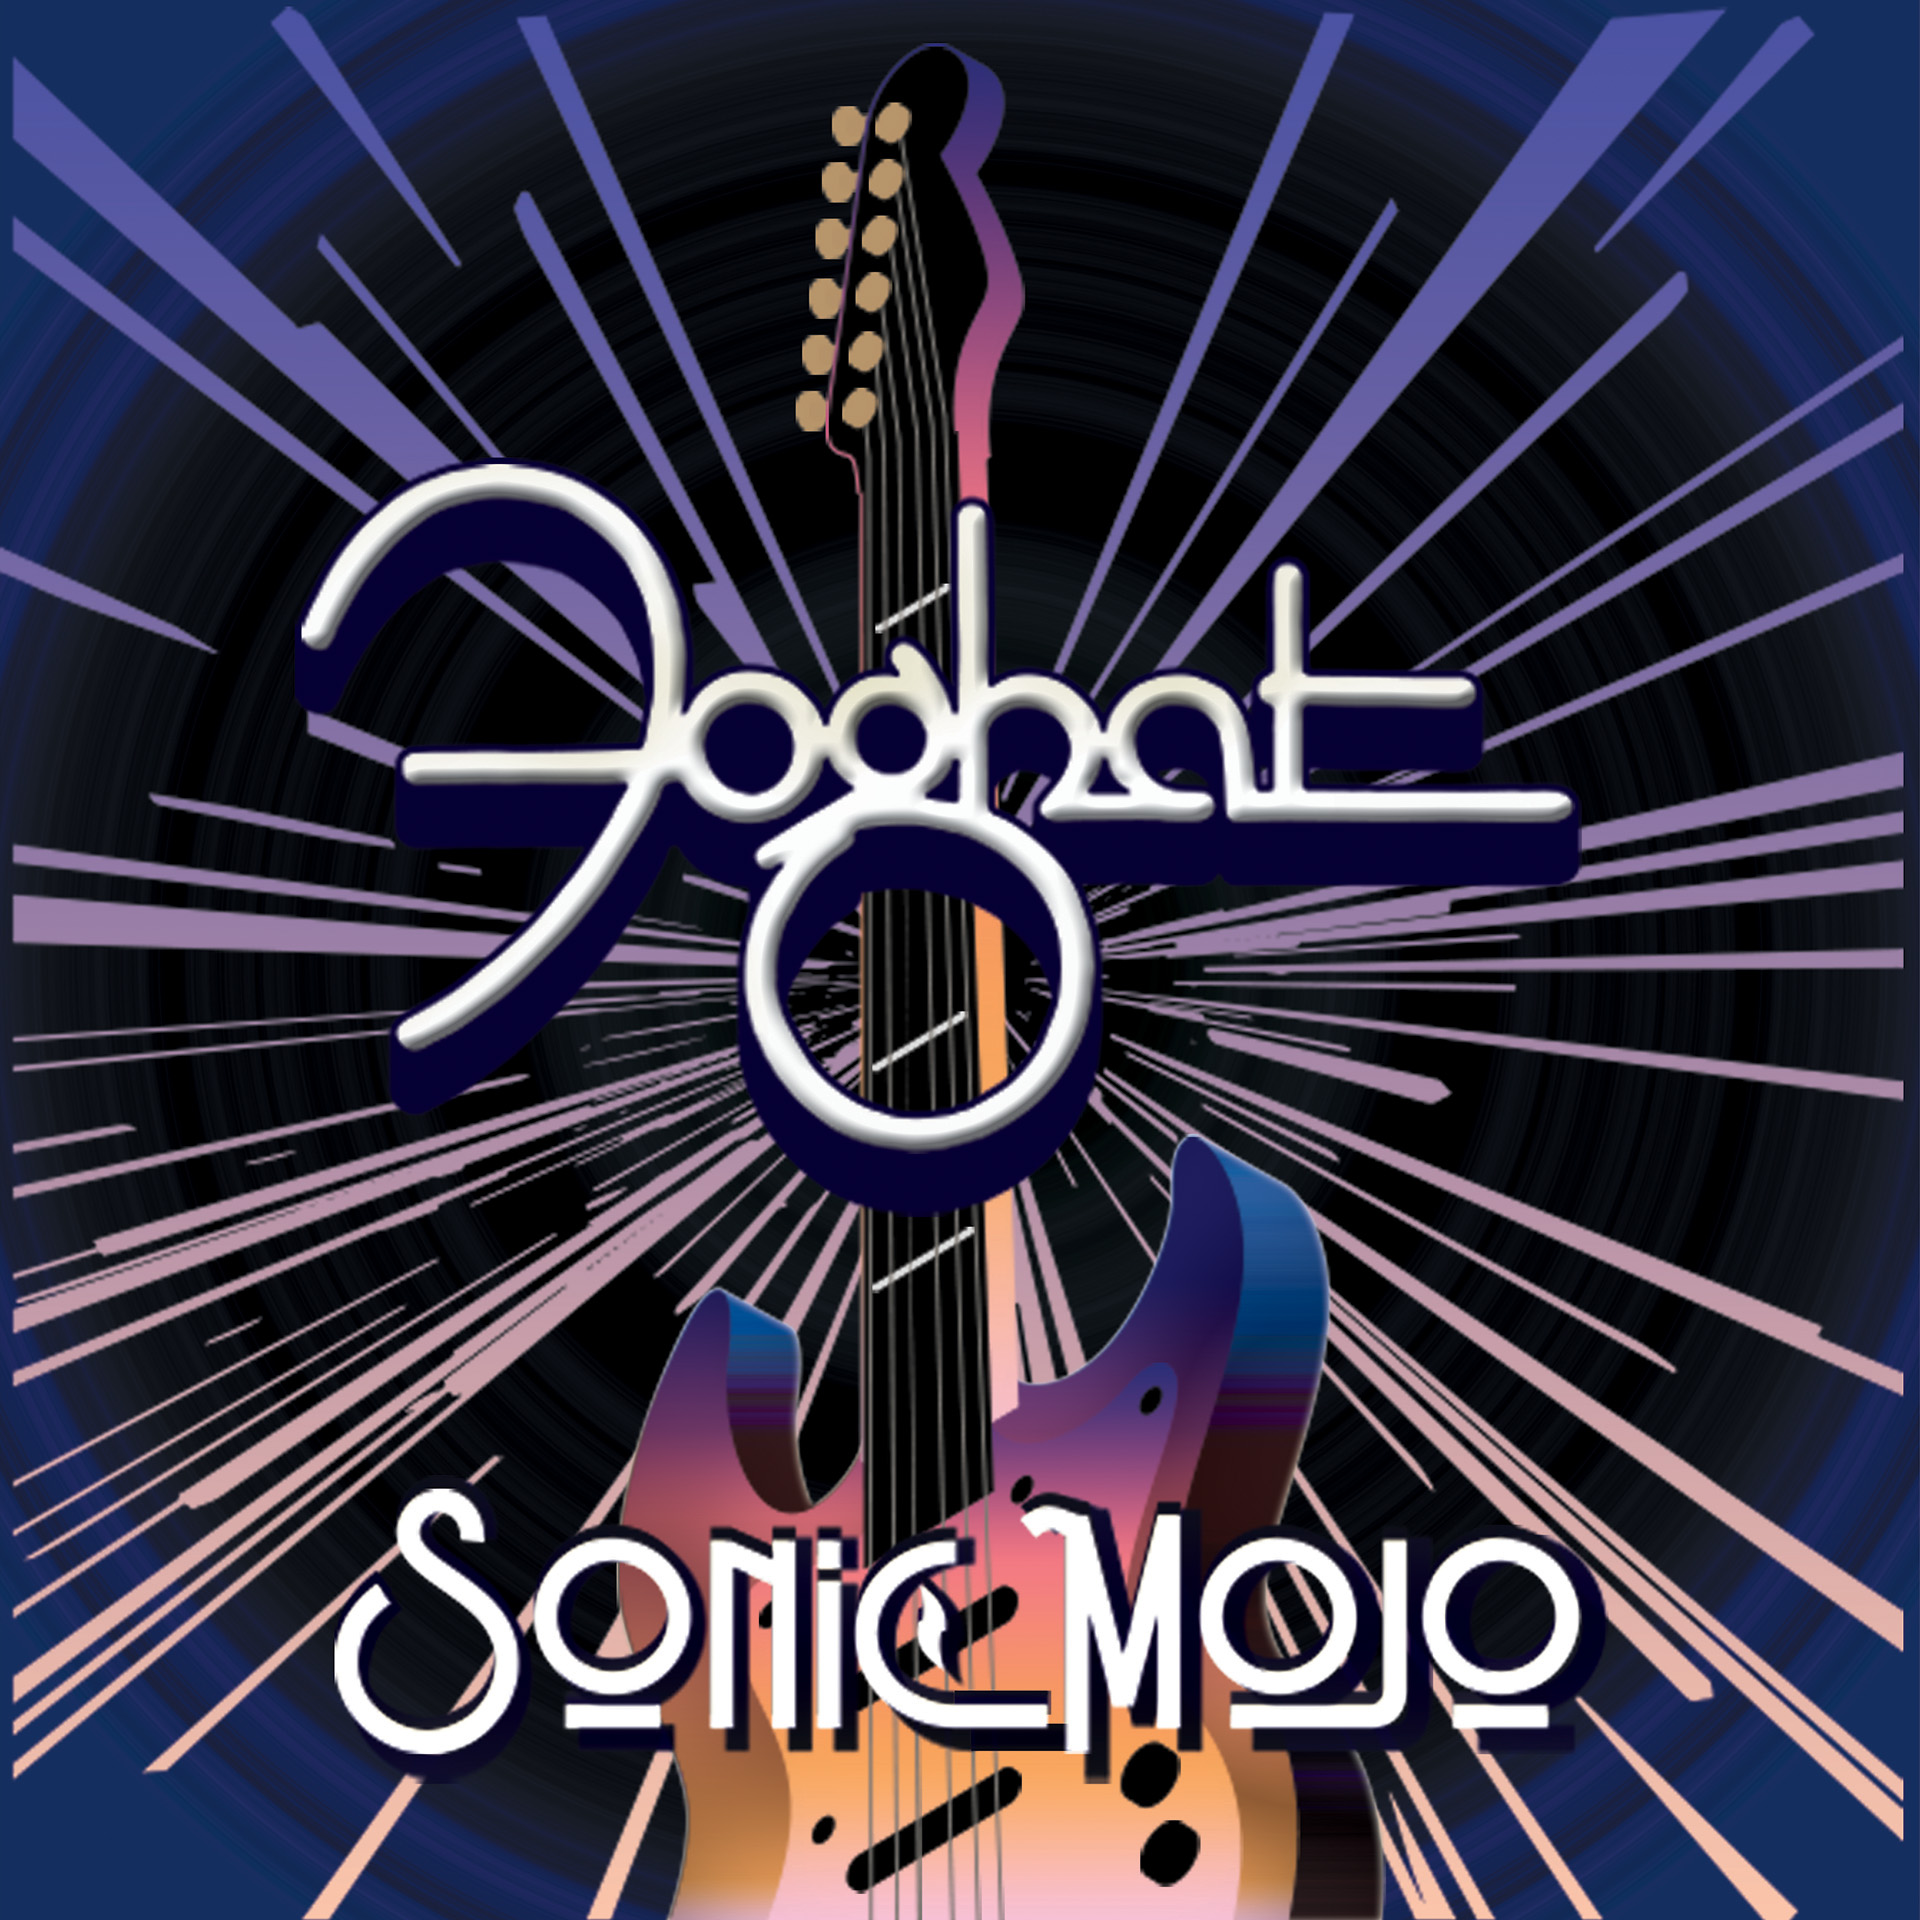 Foghat ‘Sonic Mojo’ Album Artwork